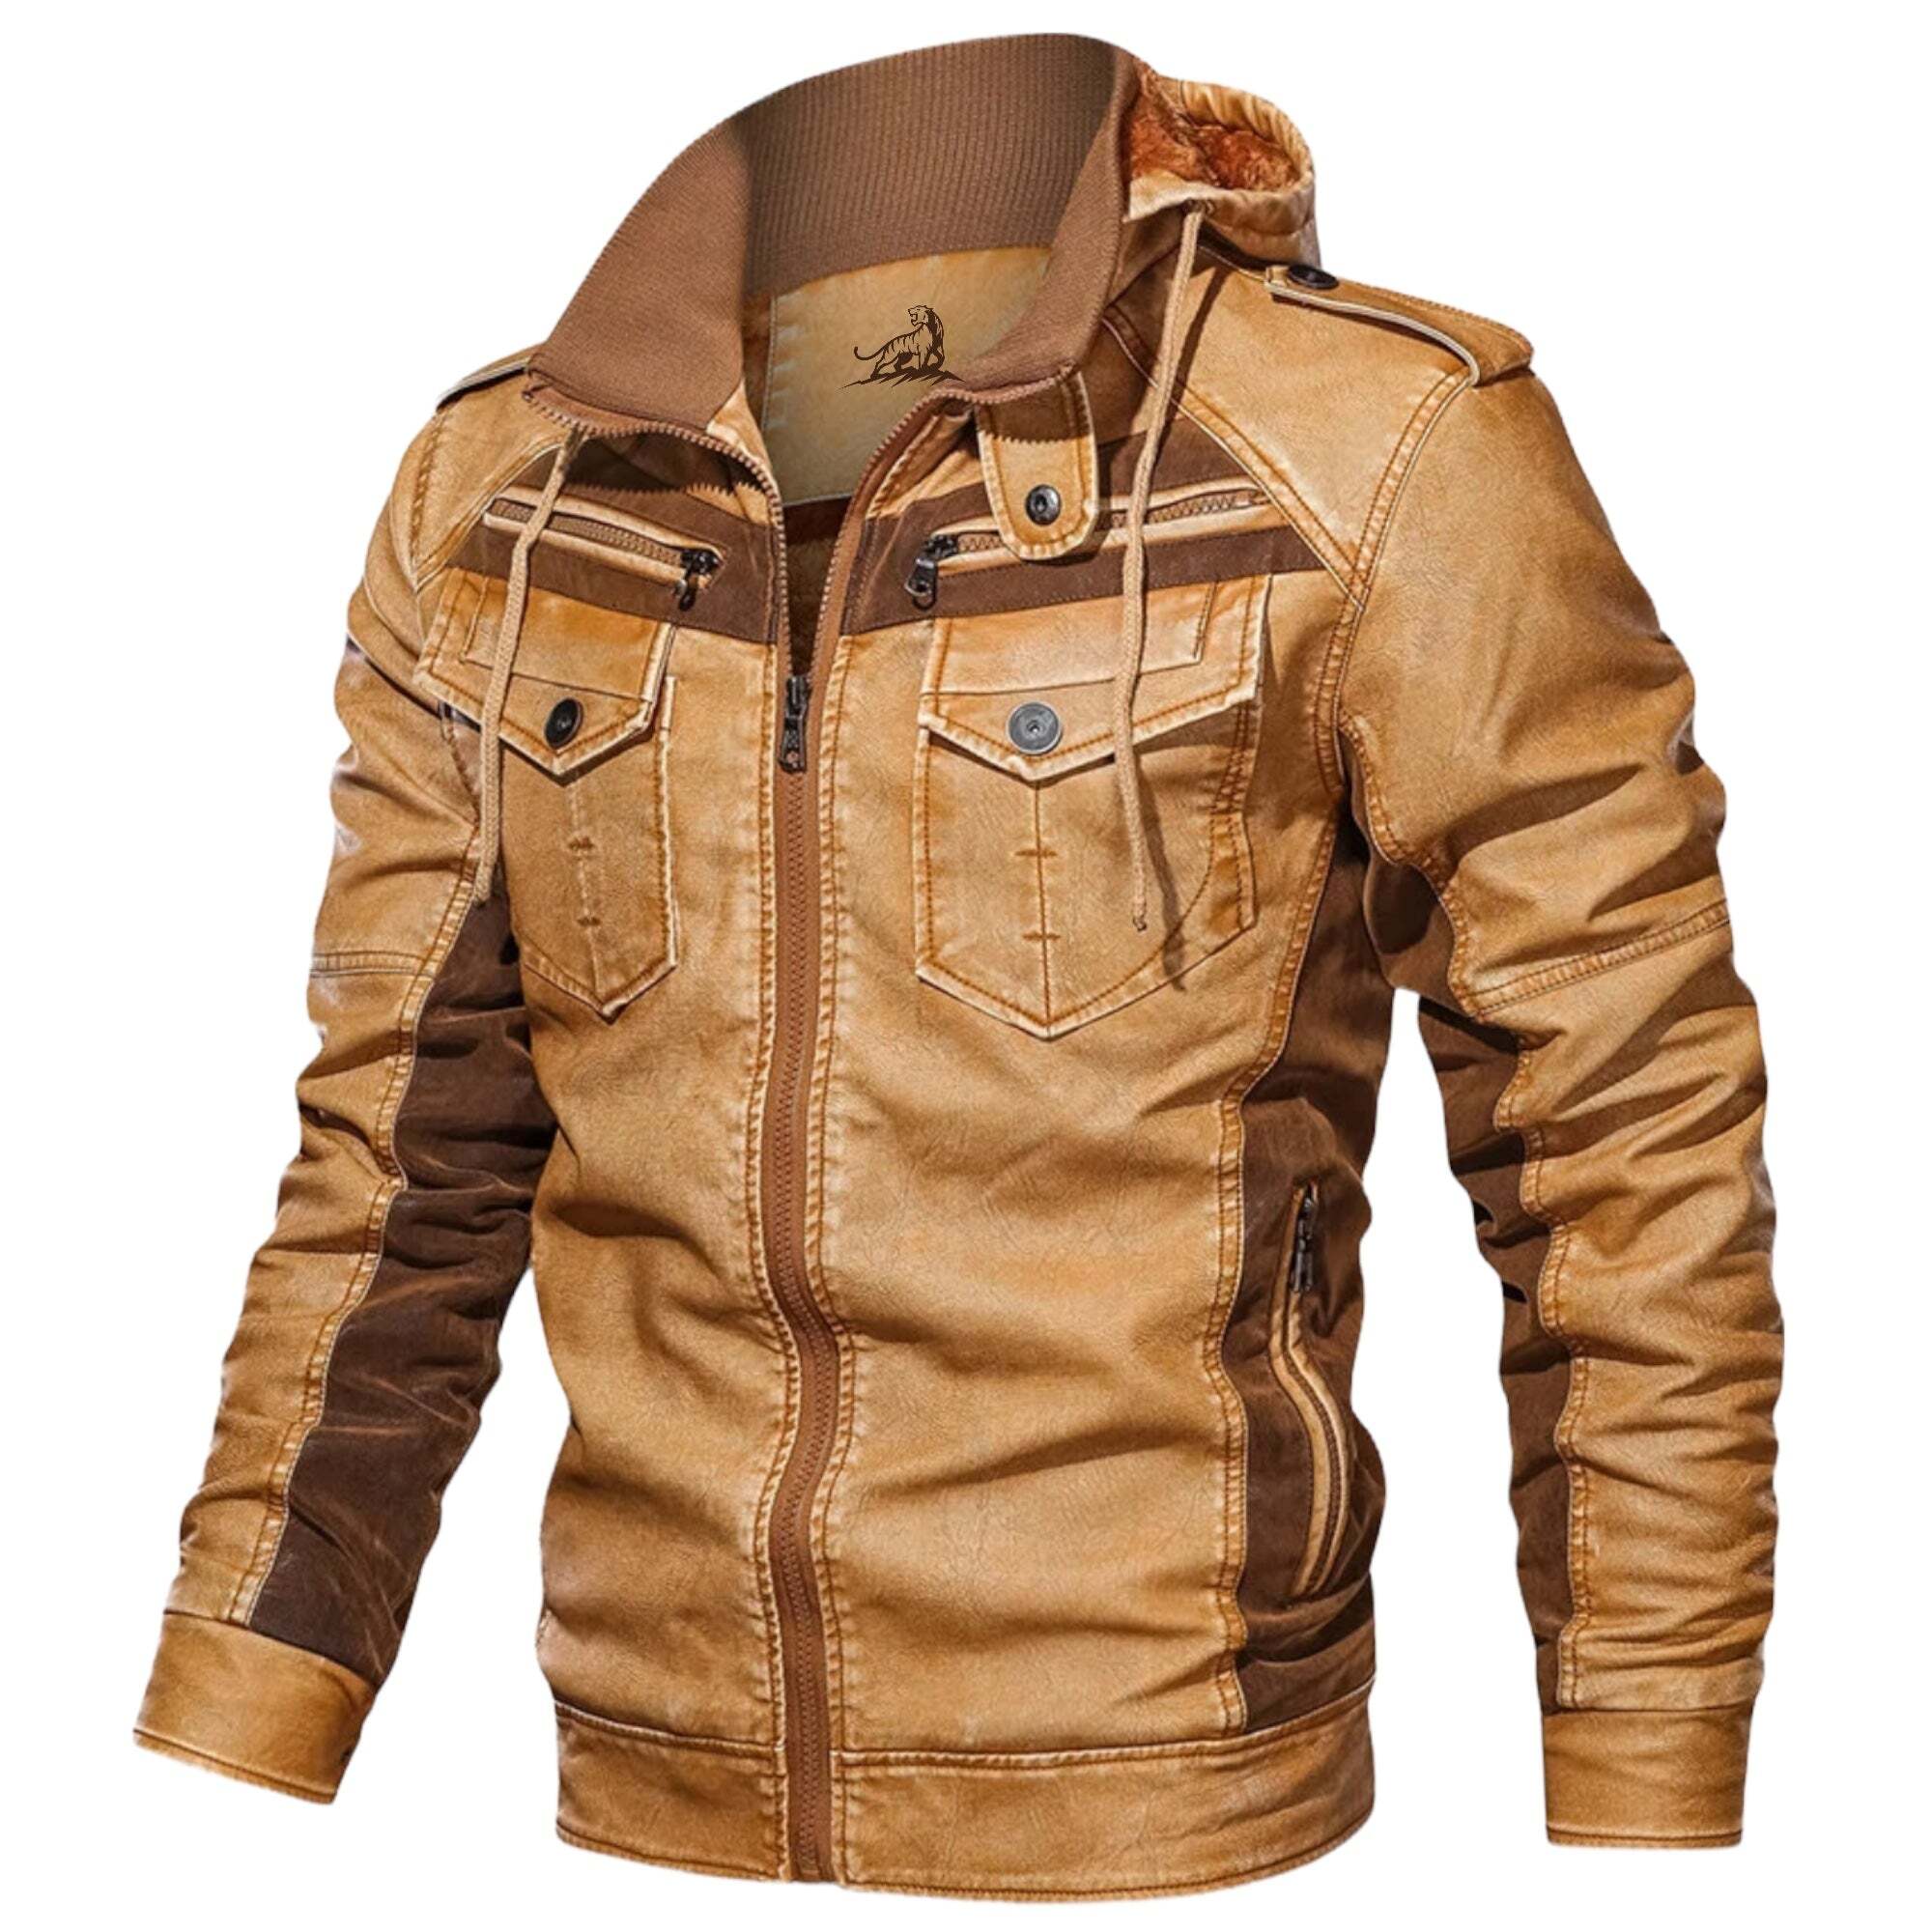 'Mohawk Rogue' Leather Jacket